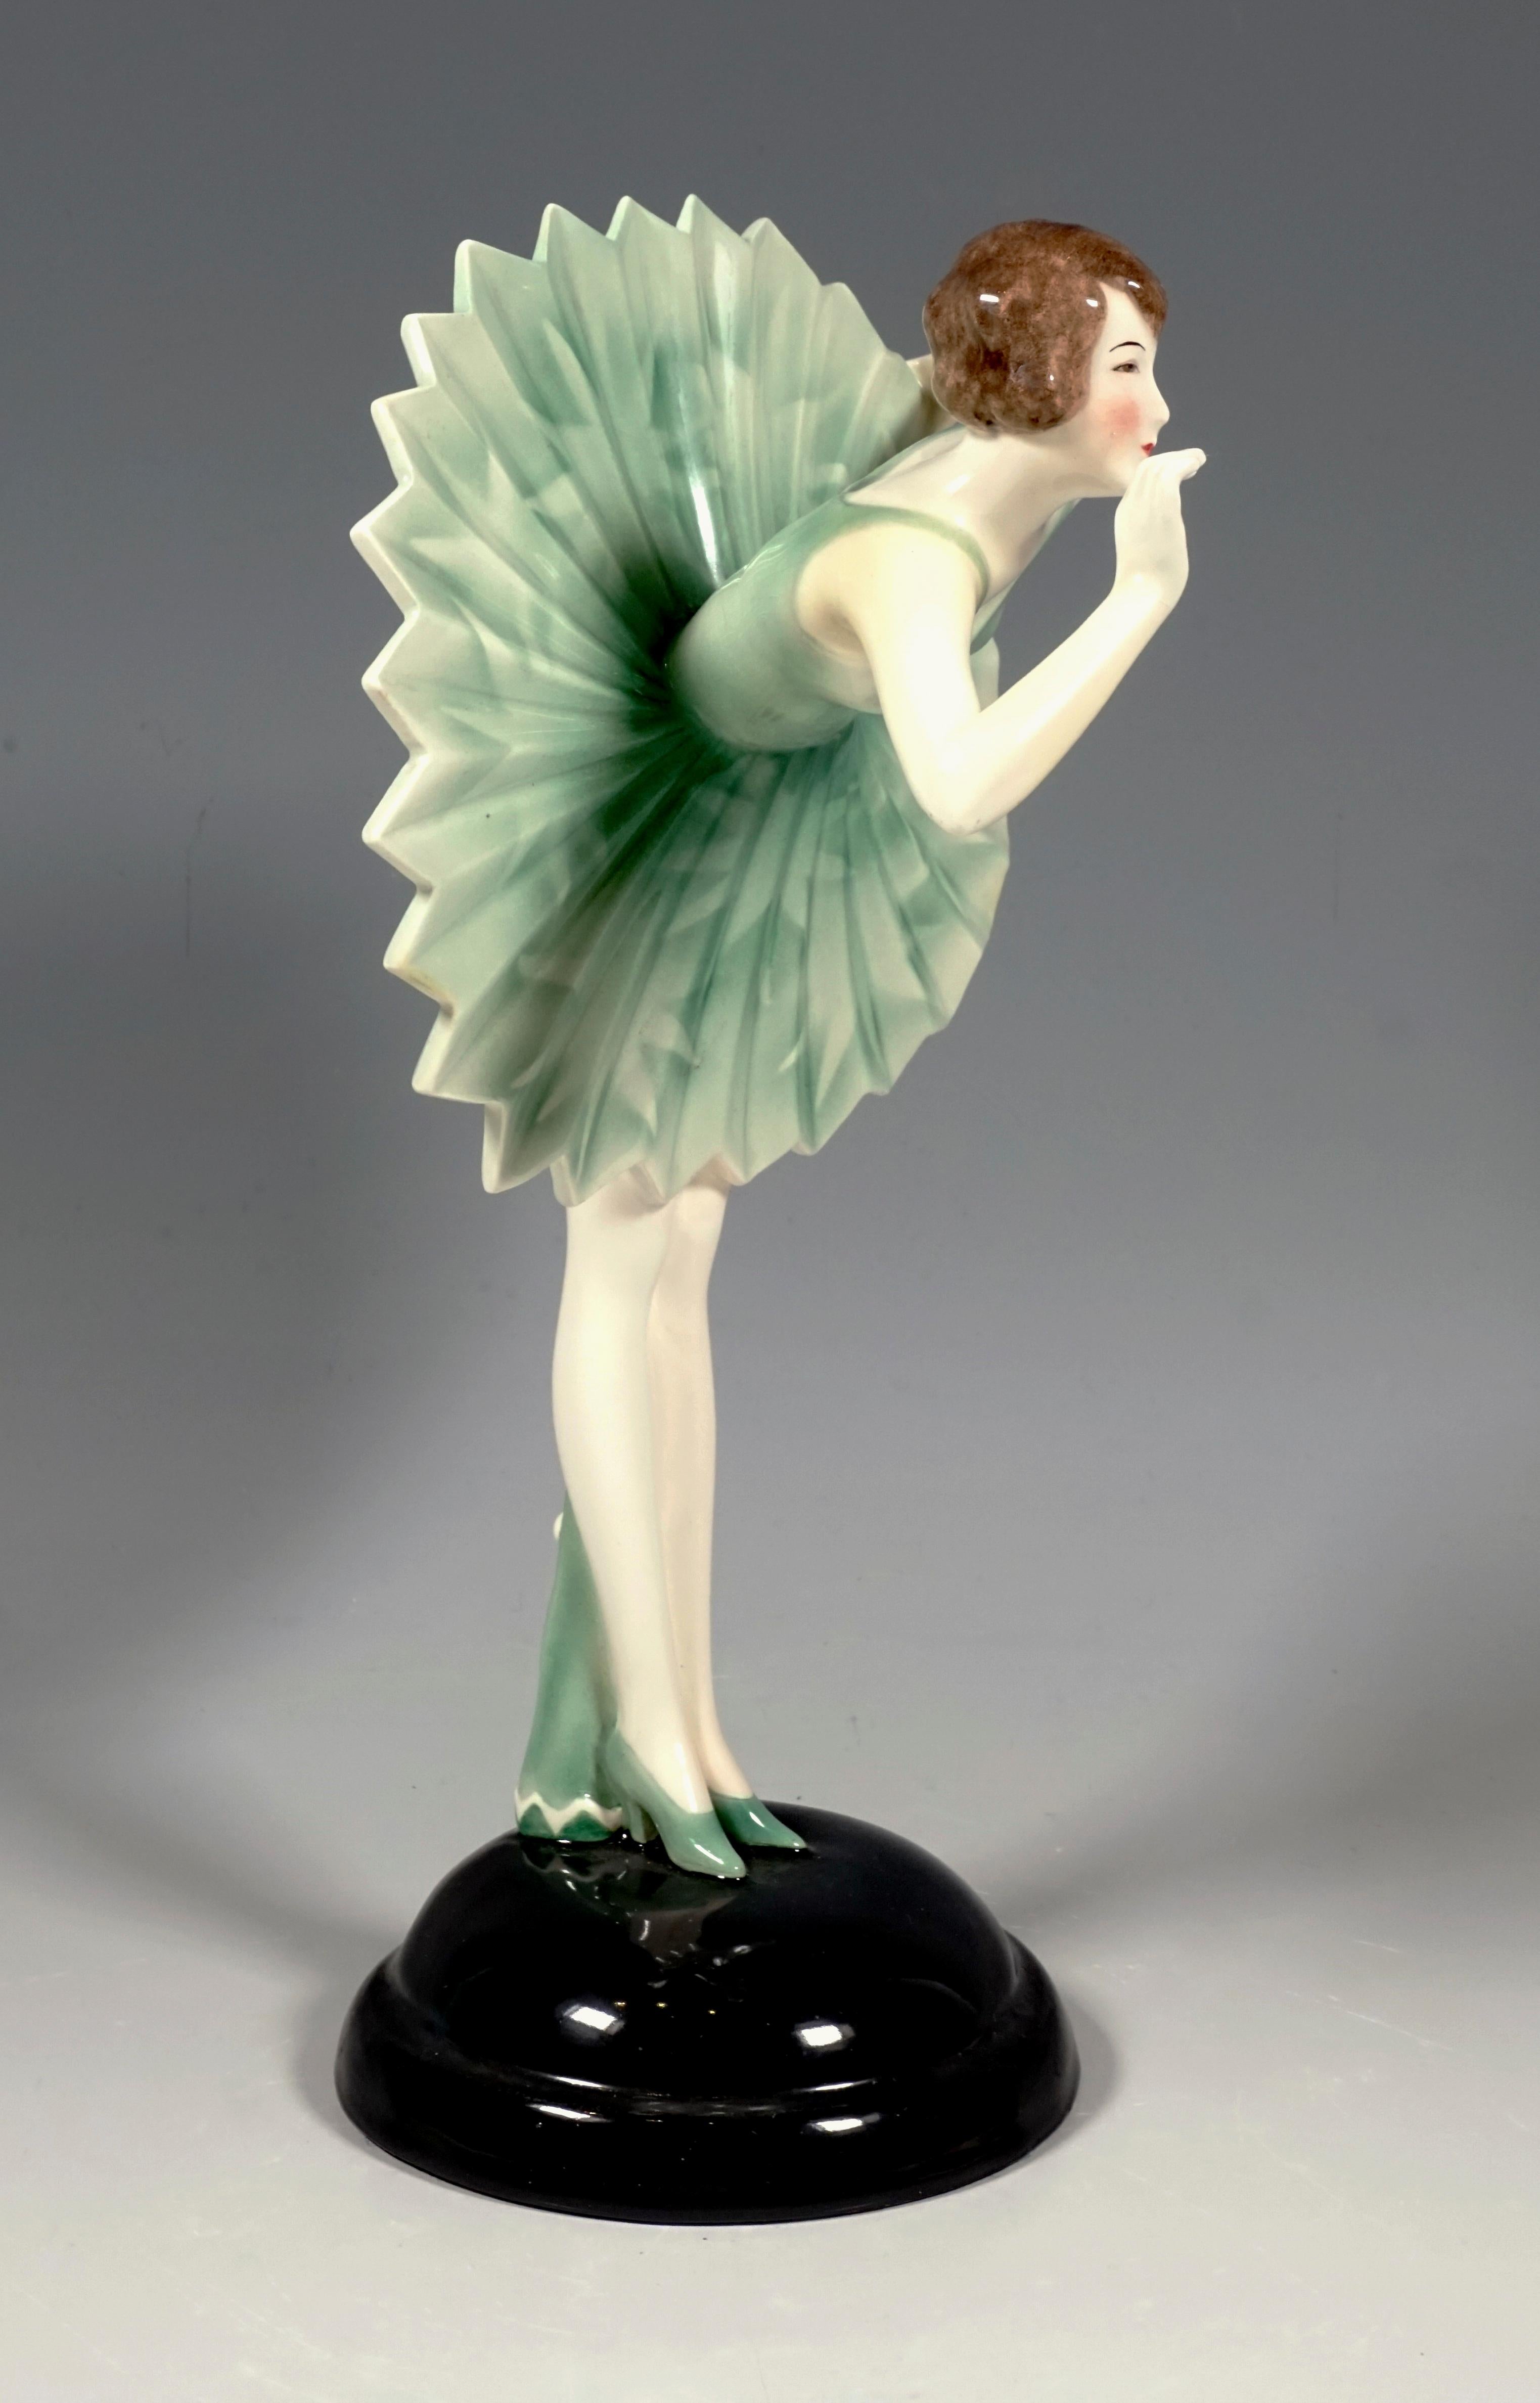 Bemerkenswerte Art Deco Goldscheider Keramikfigur aus den 1930er Jahren:
Junge Tänzerin mit kurzen Haaren, die sich vor ihrem Publikum verbeugt, so dass der Faltenrock mit Zickzack-Saum sternförmig absteht, hinter ihr auf dem Boden liegt ein